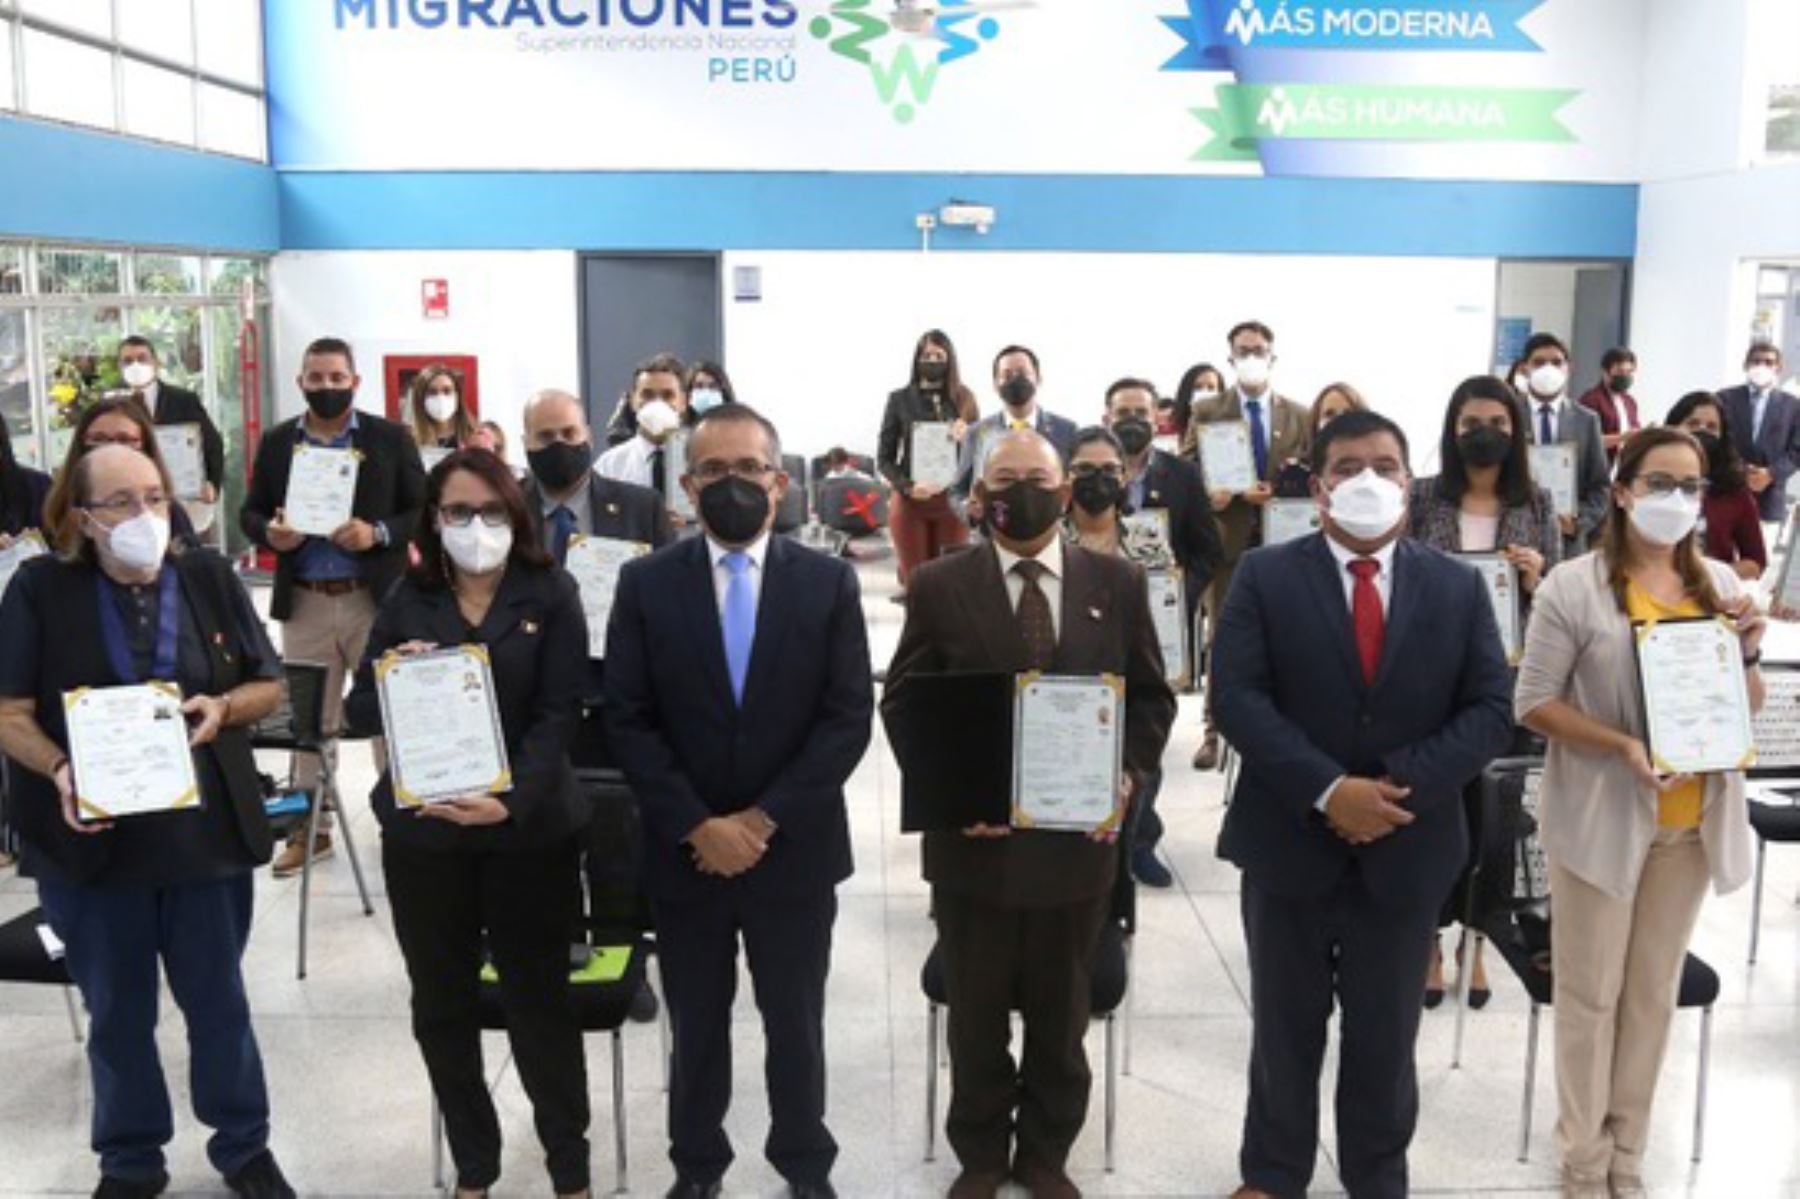 Migraciones: 28 ciudadanos extranjeros reciben nacionalidad peruana